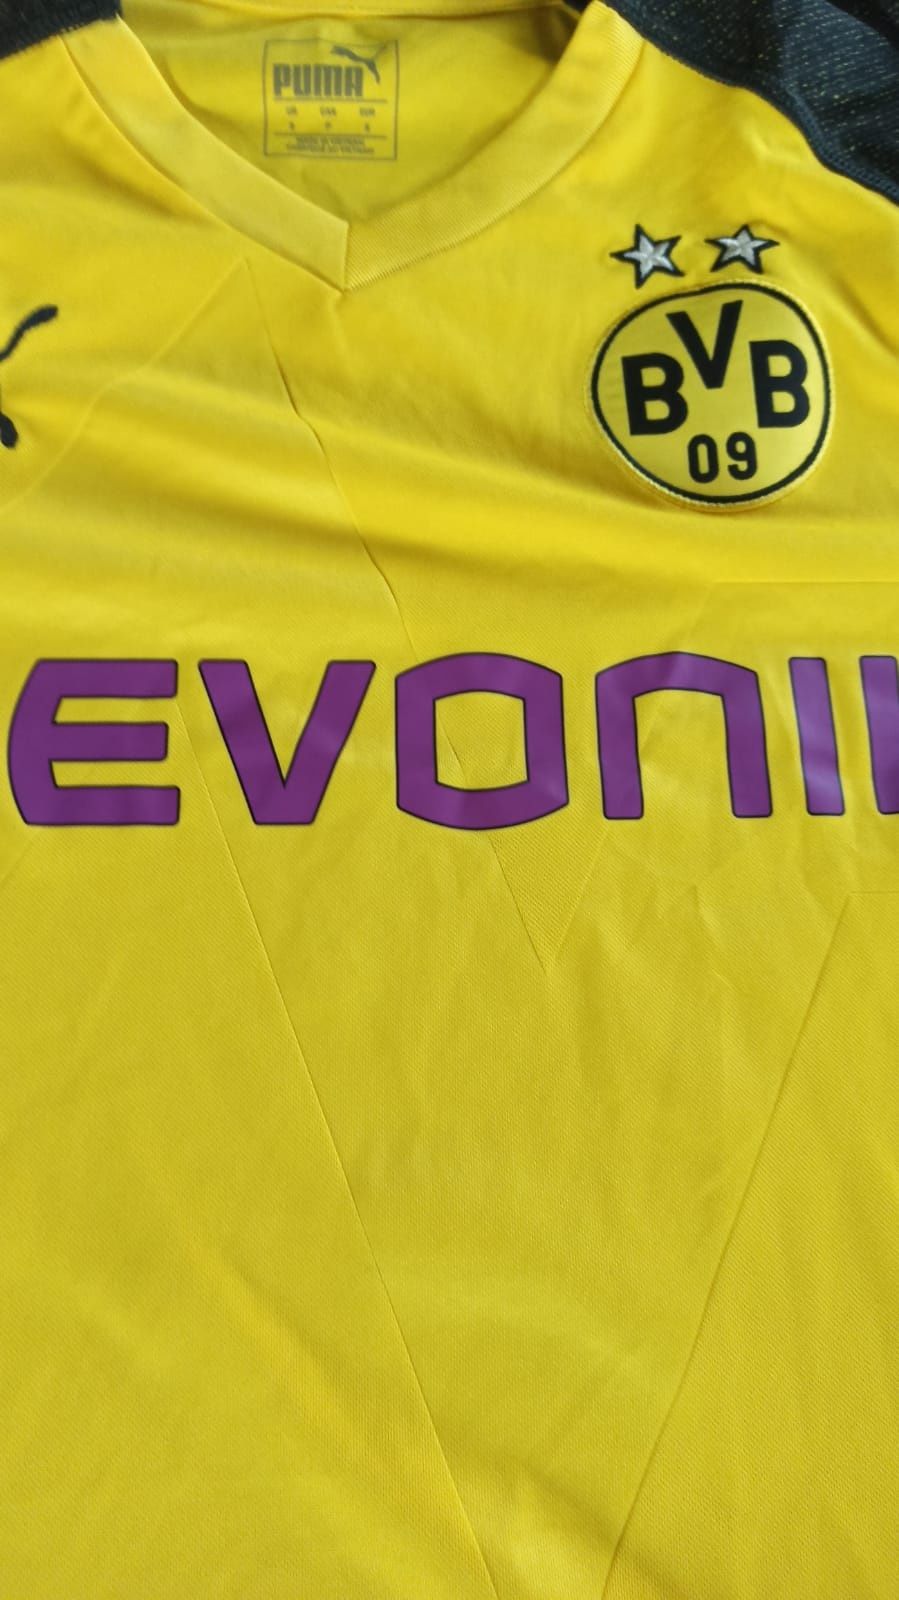 Koszulka Borussia Dortmund rozm S